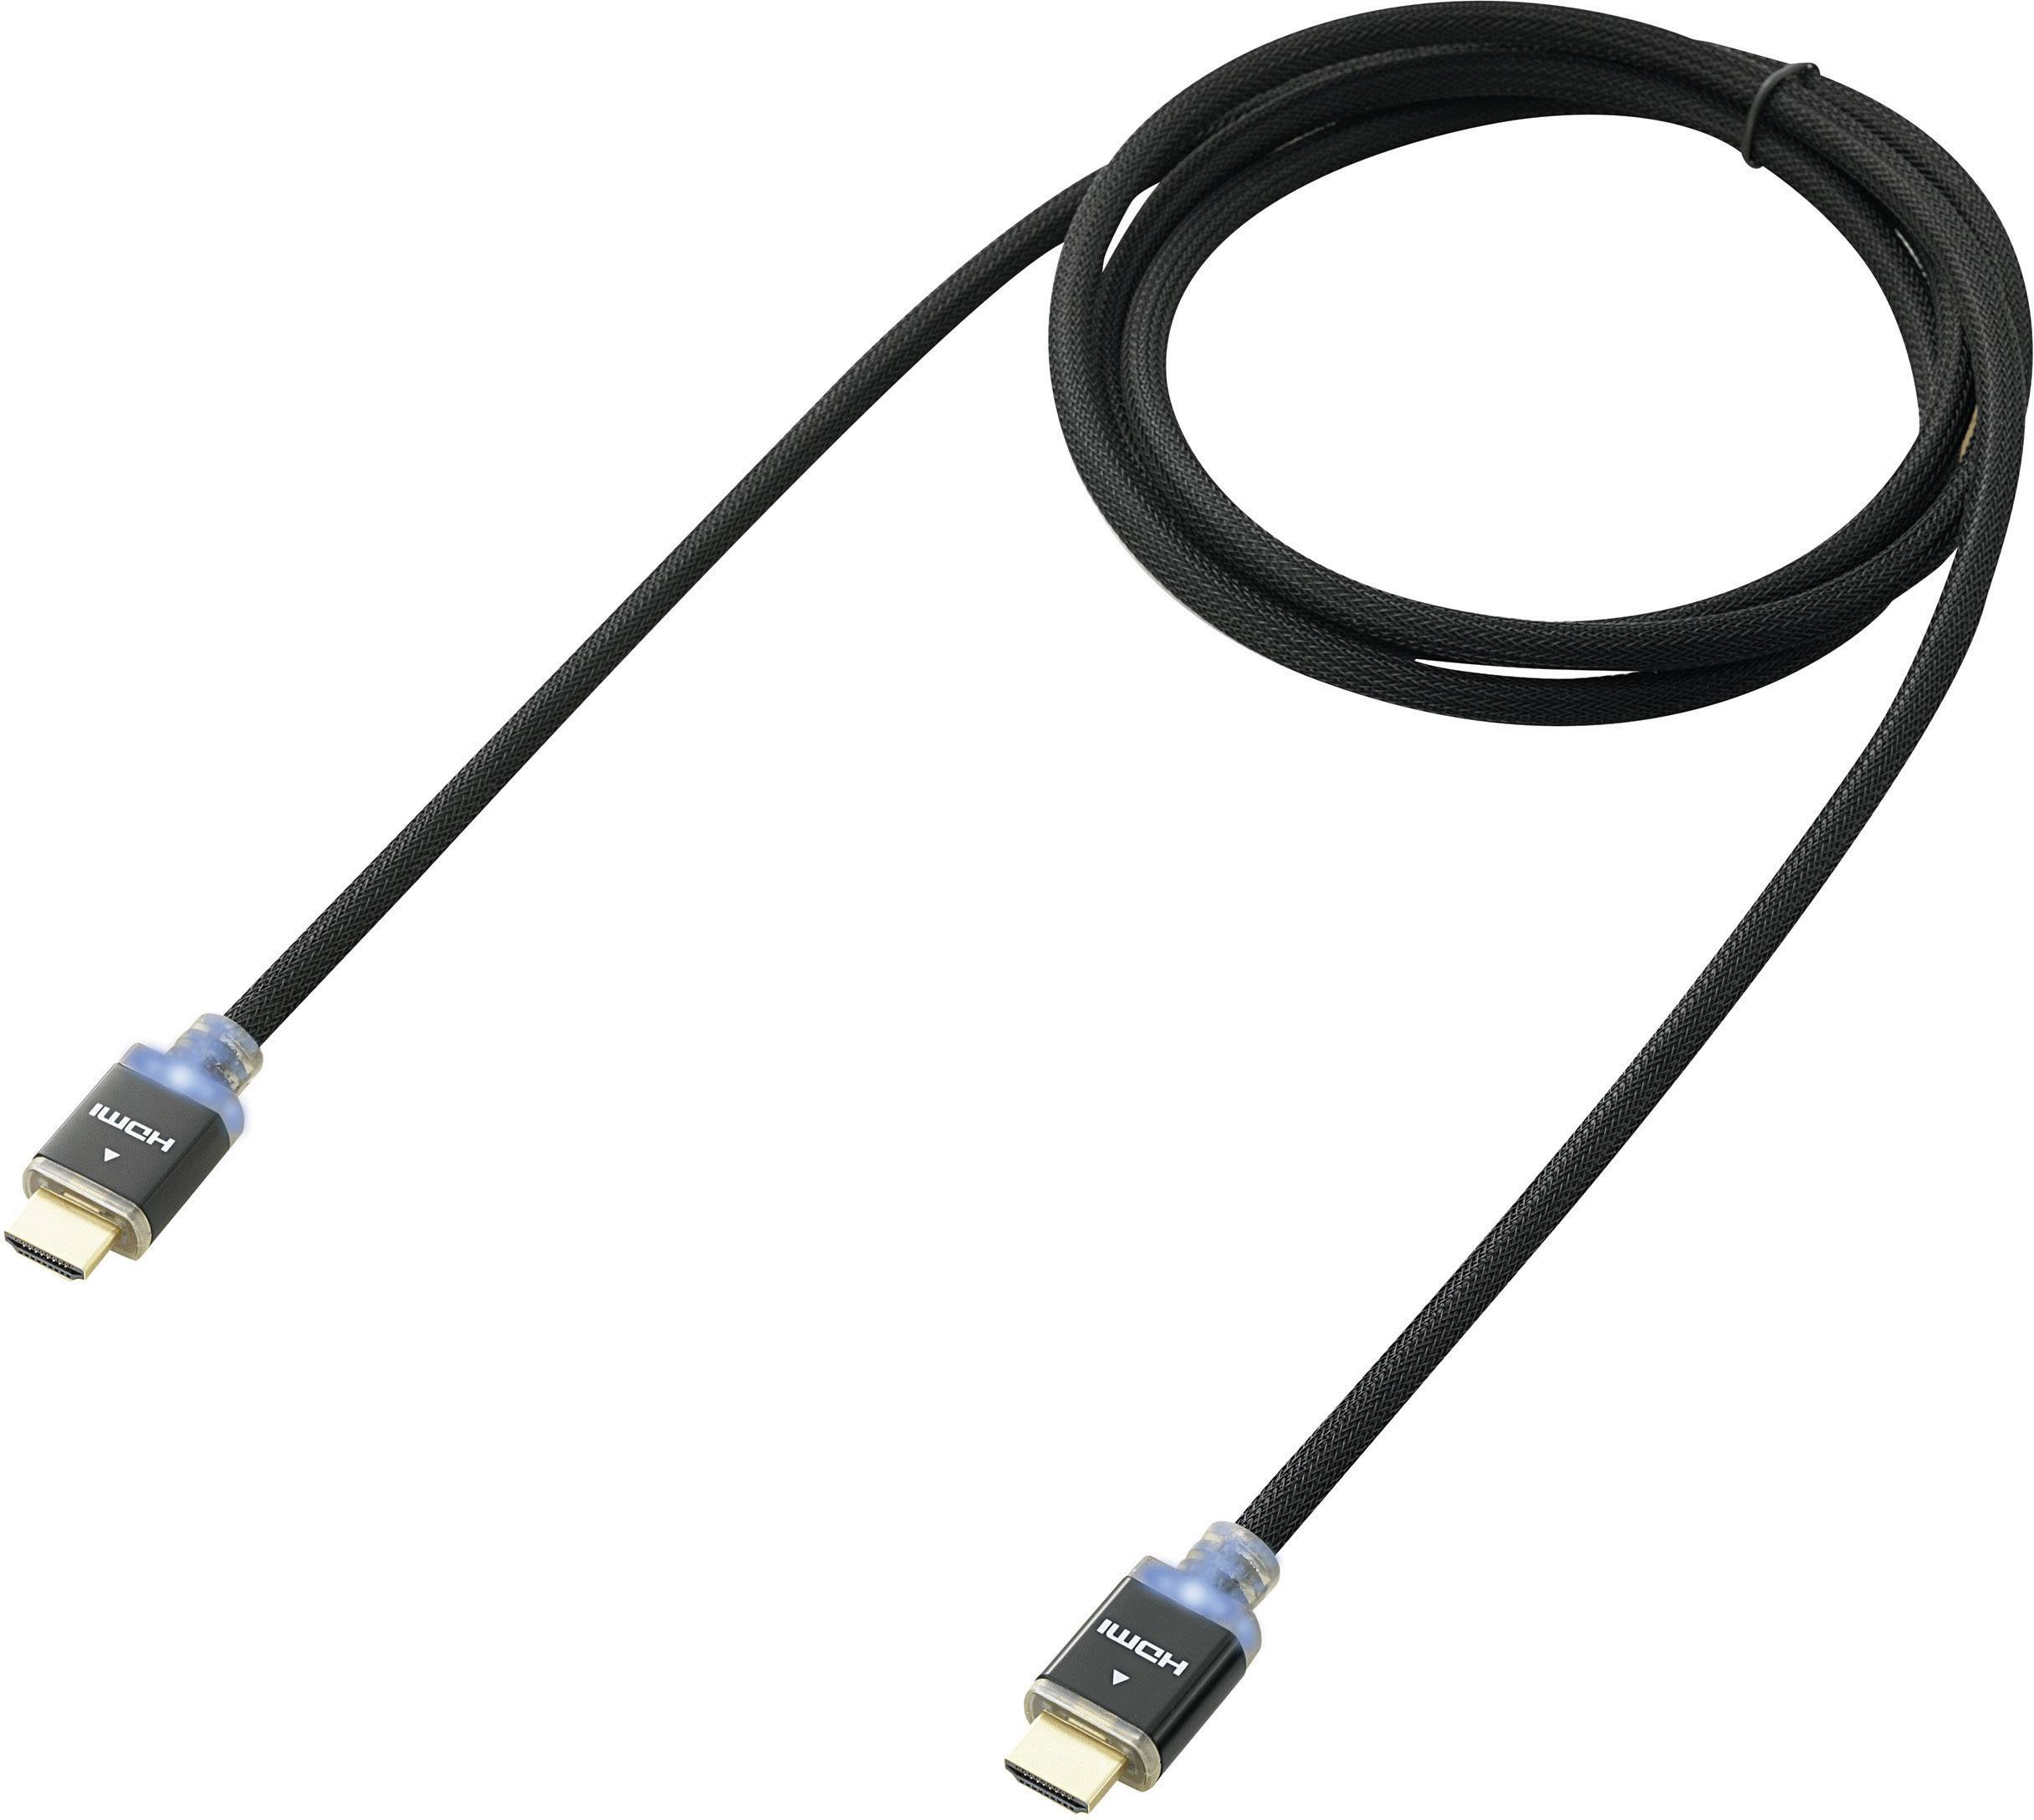 CONRAD HDMI Anschlusskabel mit LED [1x HDMI-Stecker - 1x HDMI-Stecker] 3 m Schwarz SpeaKa Profession